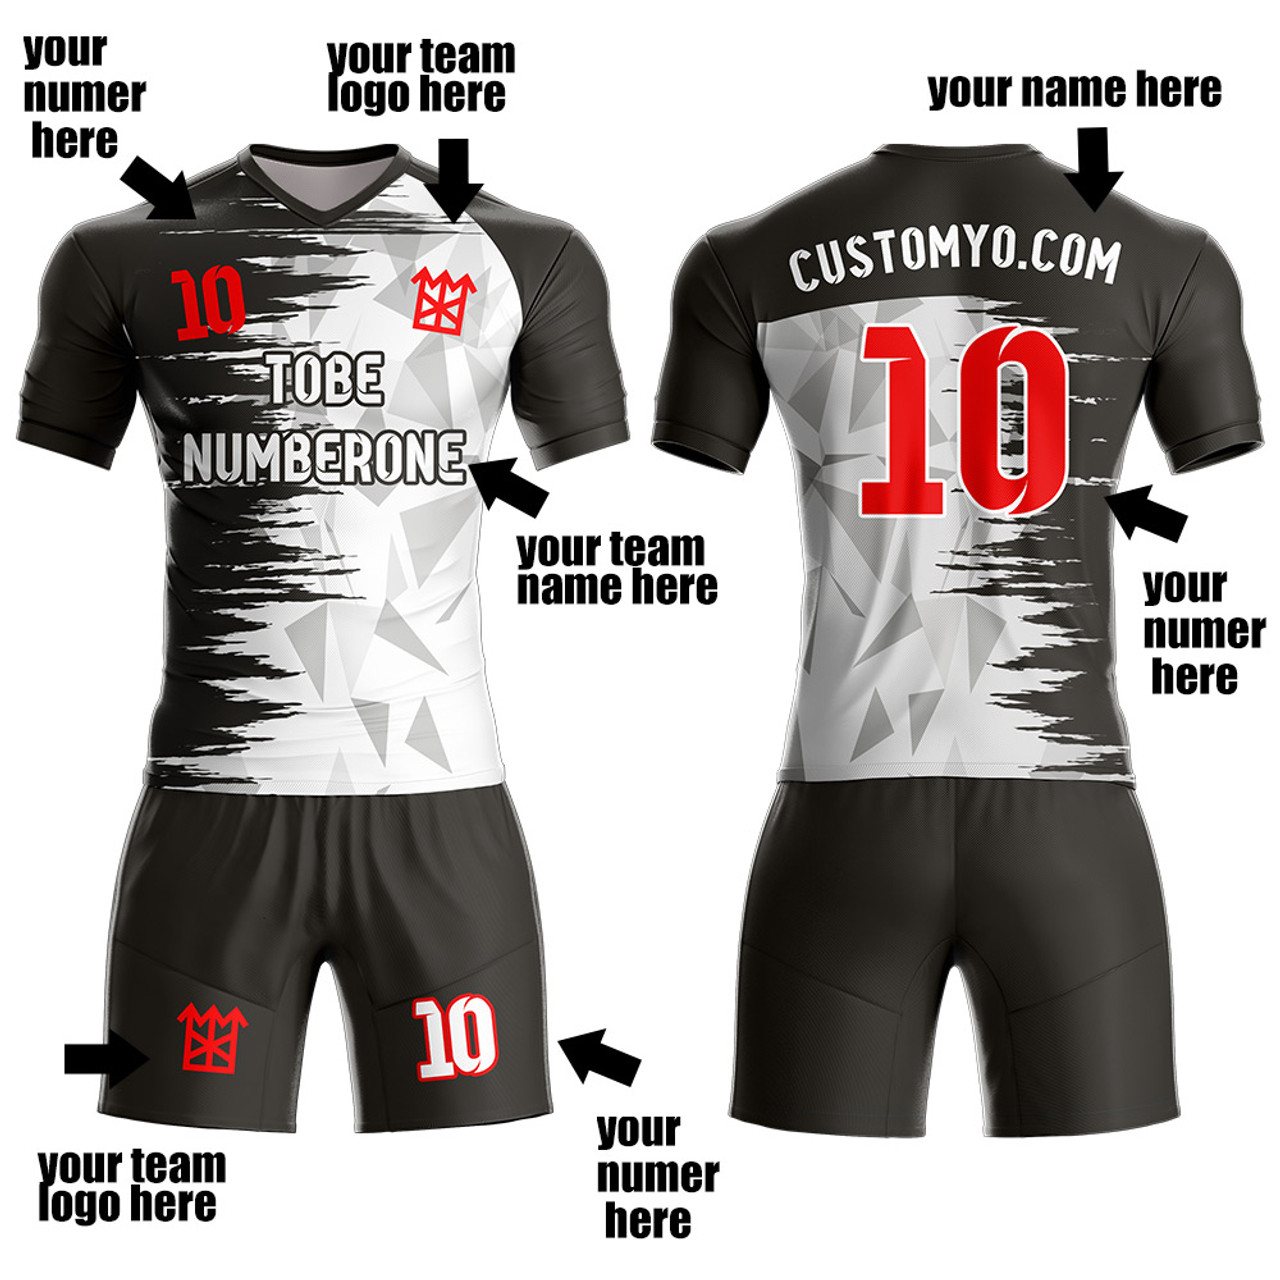 Soccer & Football Jerseys - Custom Jerseys & Team Jerseys